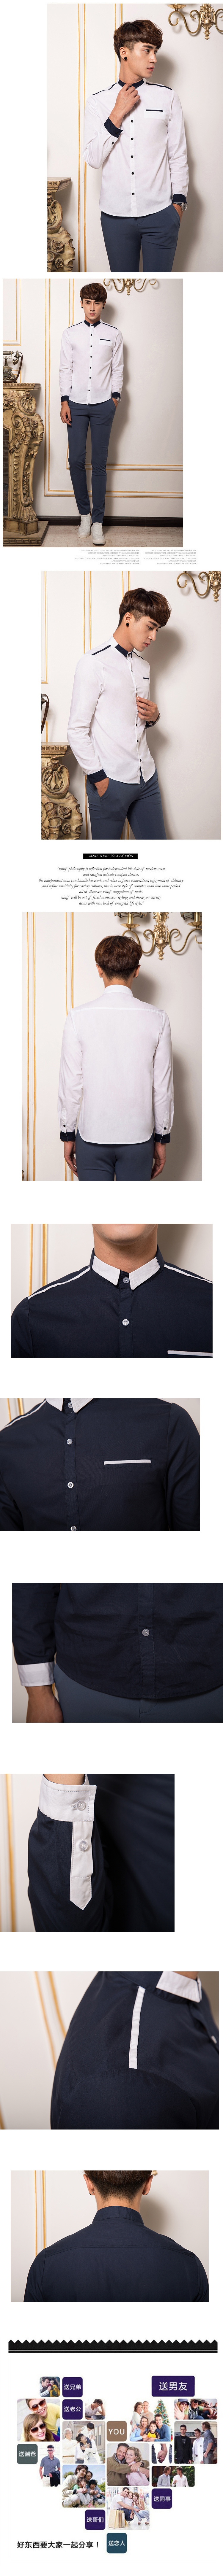 mssefn2014新款春秋款高质量韩版修身潮男长袖衬衫QT1303/CS01